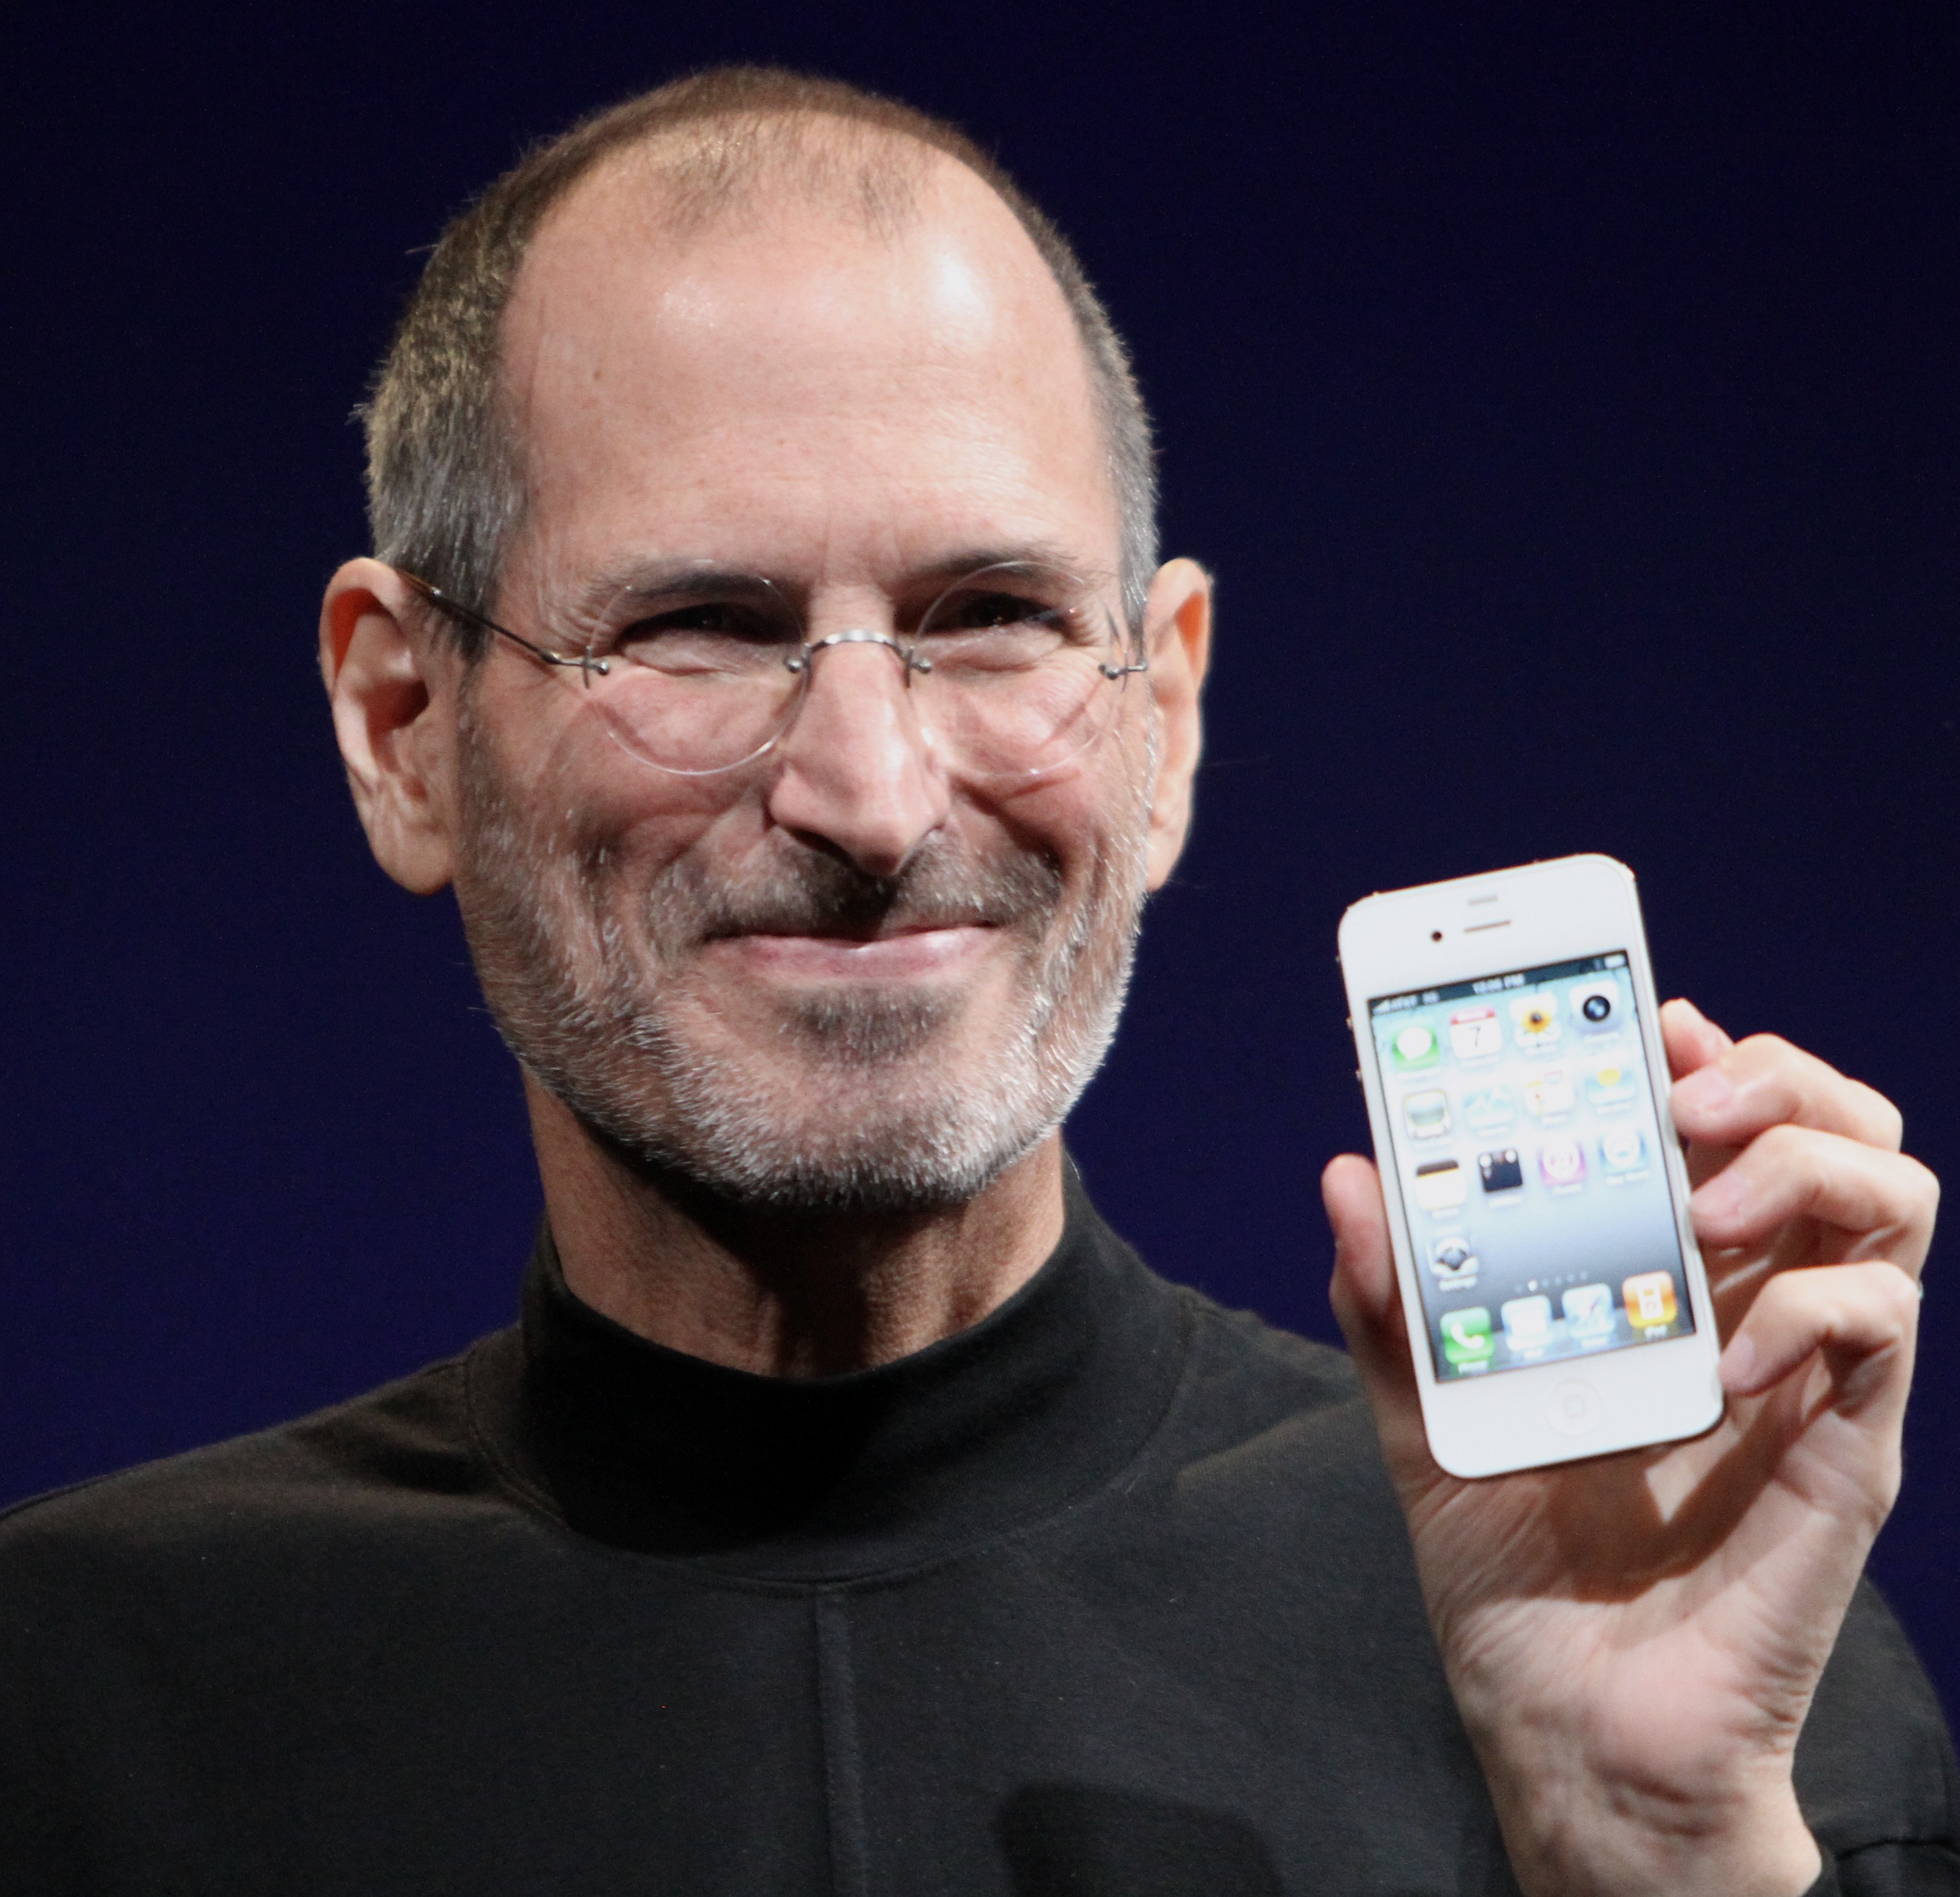 Steve Jobs.jpg